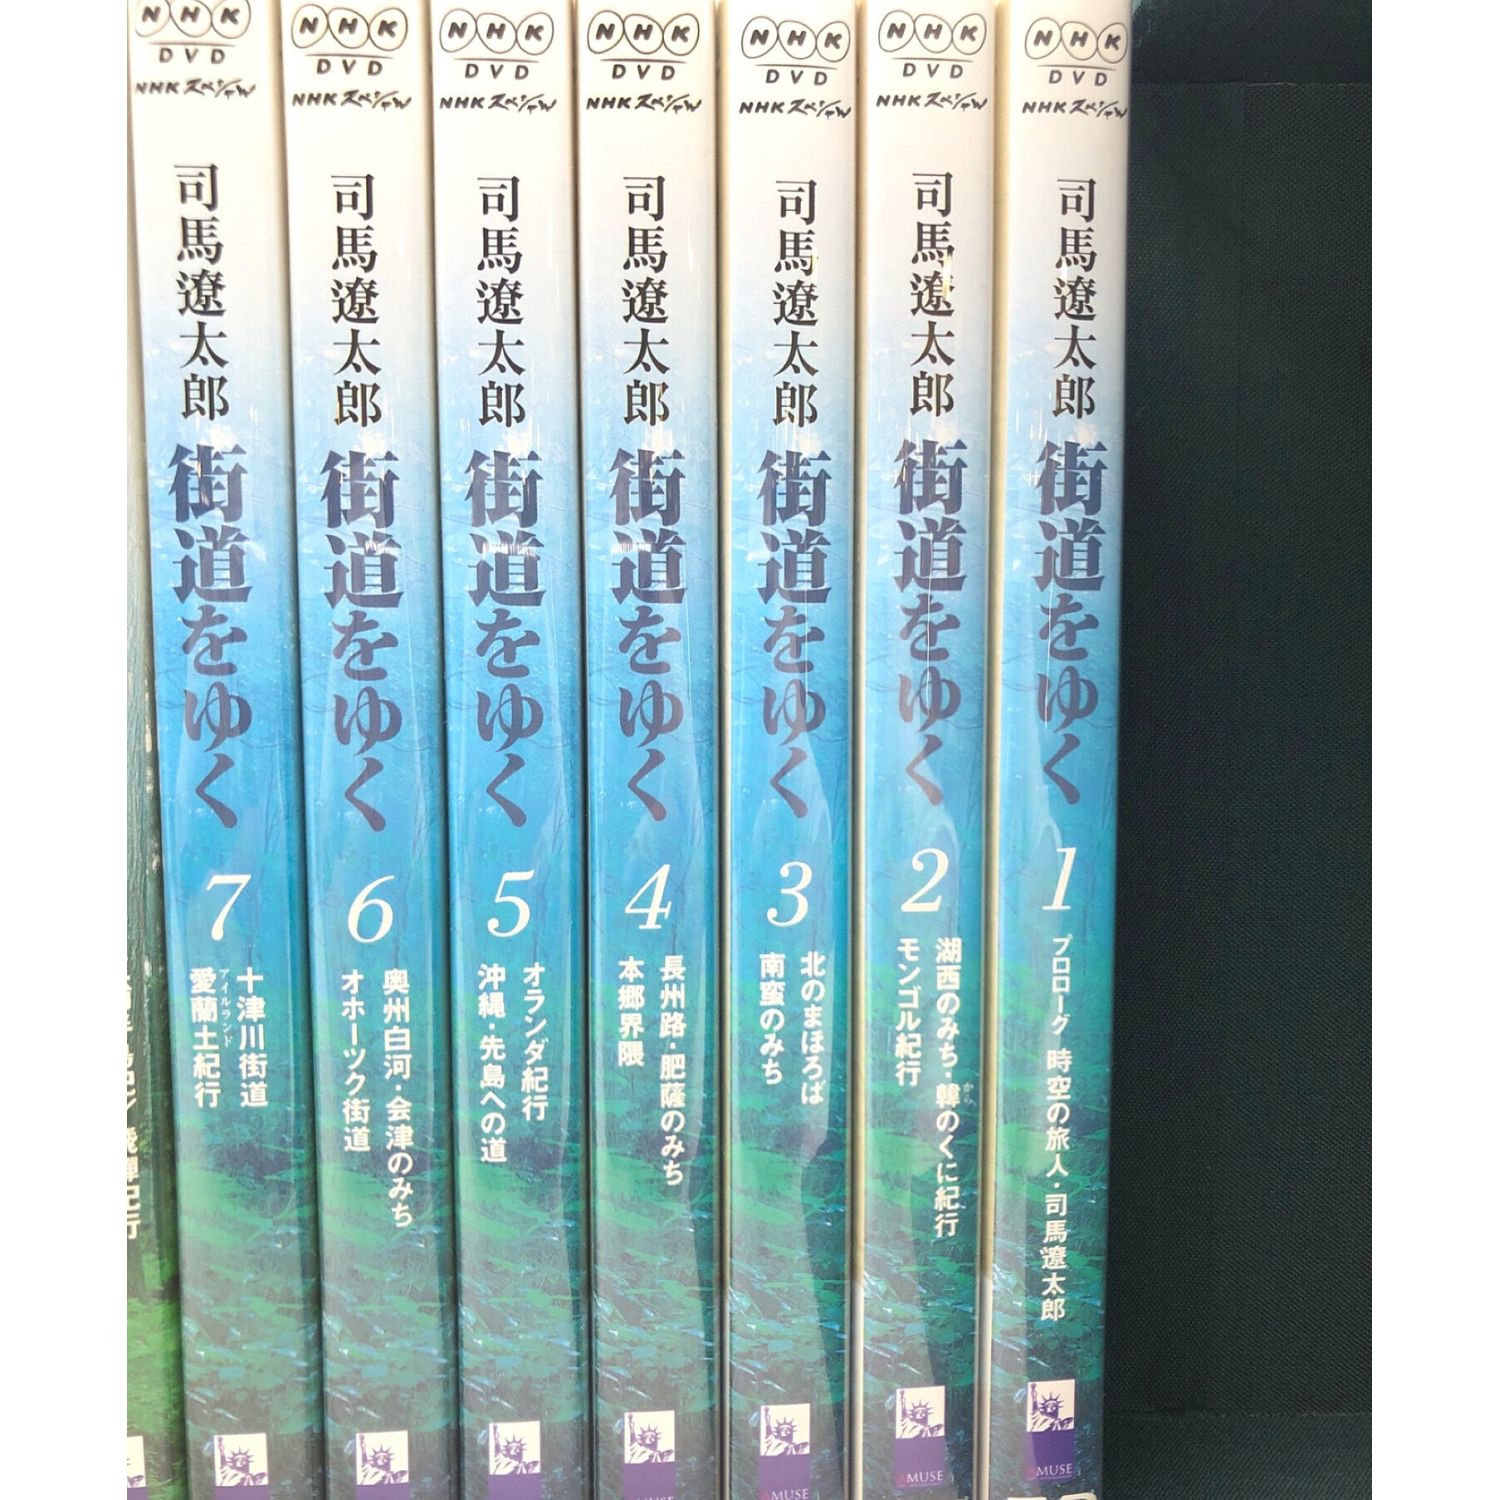 司馬遼太郎 街道をゆく DVDBOX(19枚組)完全版 NHKスペシャル 